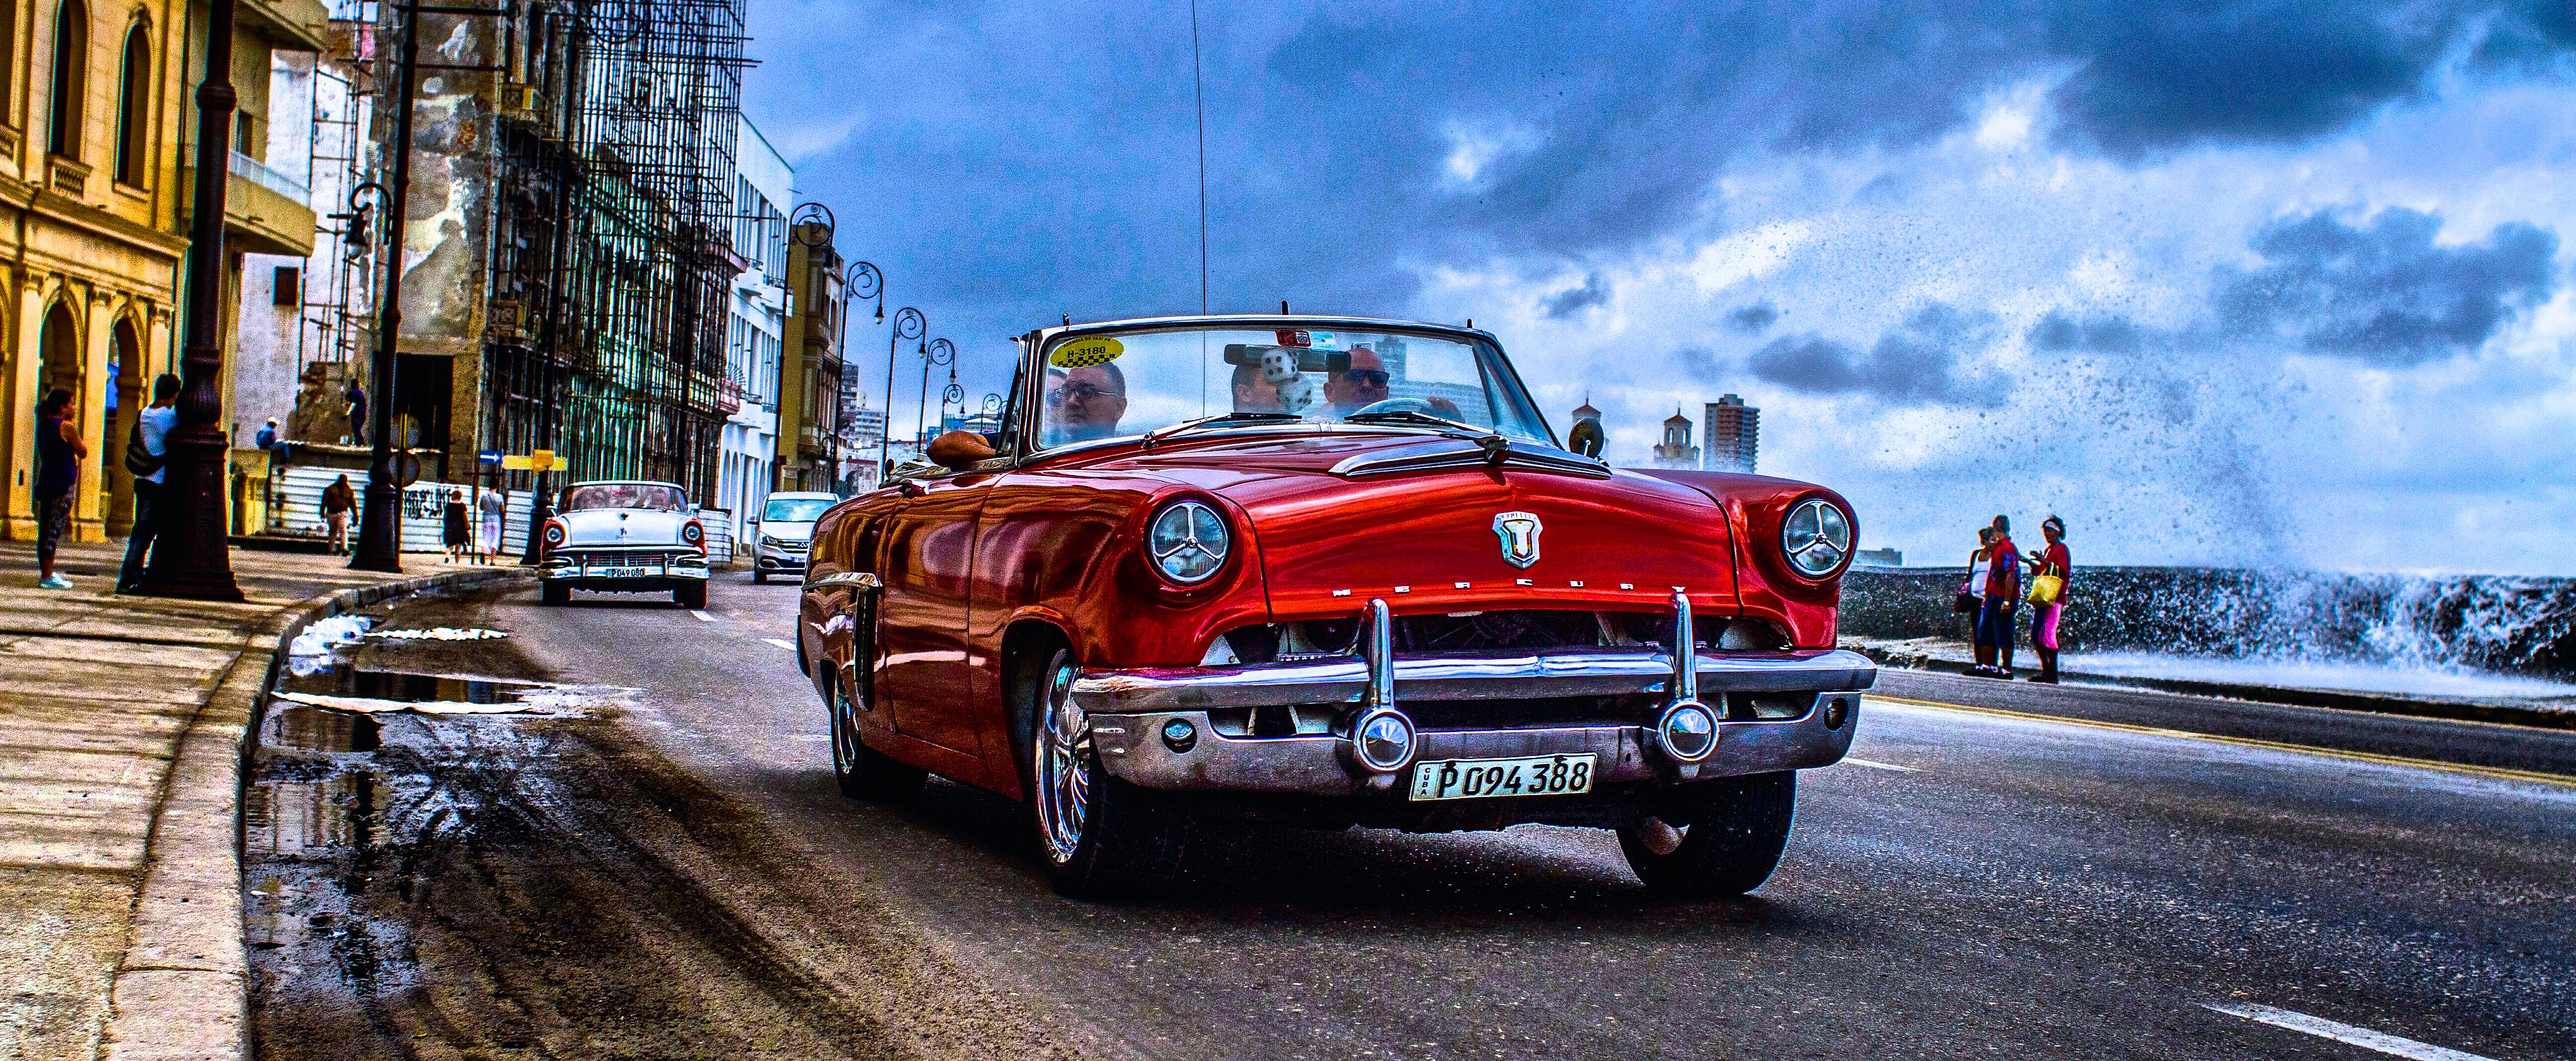 cuba vintage car tour